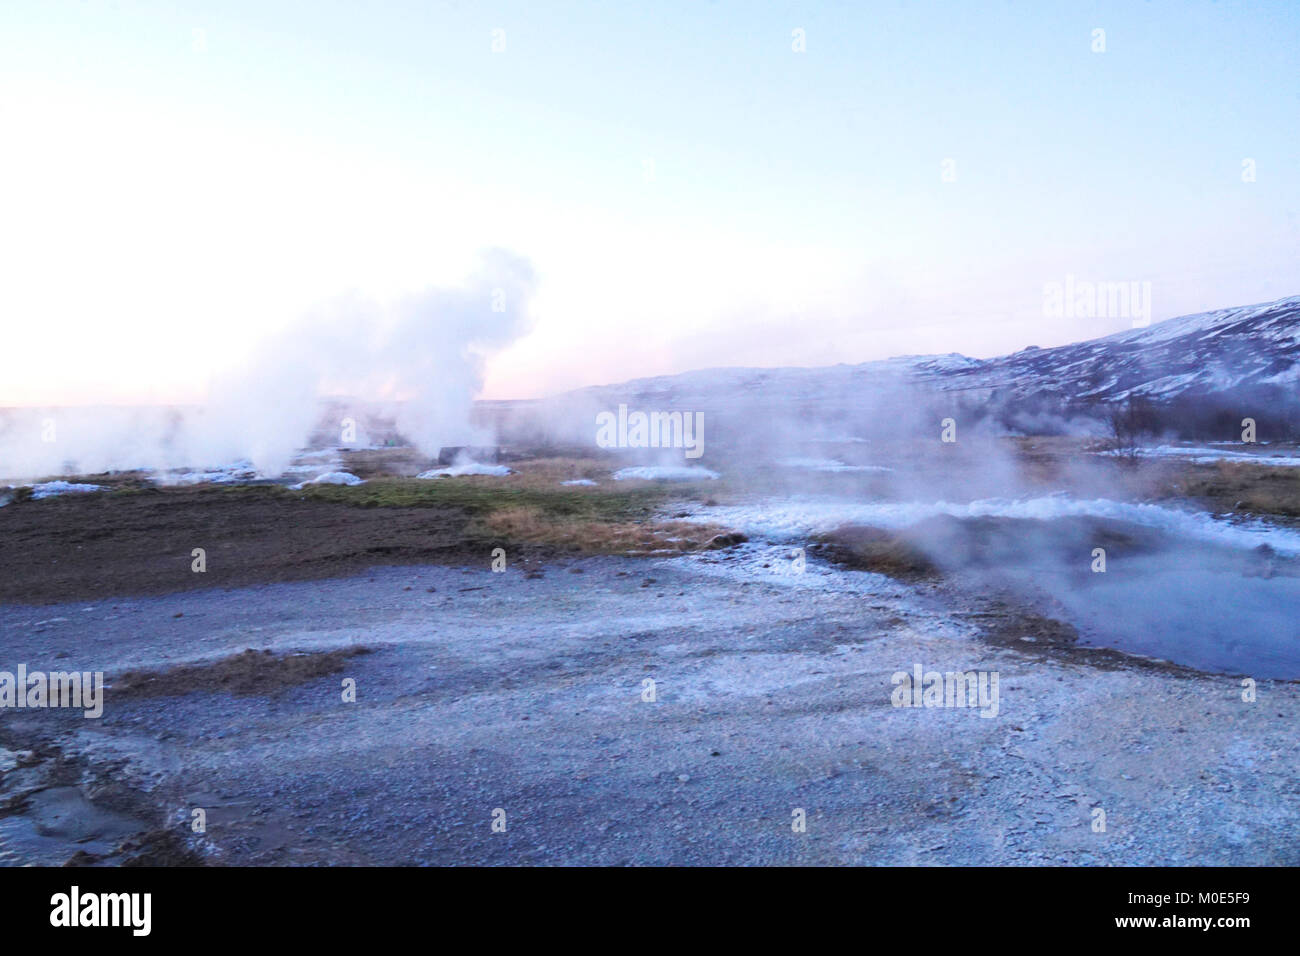 Ein beliebter Stopp entlang der Golden Circle Route für Touristen in Island ist das sehr aktive Geysir mit kochendem Mud-pits, explodierende Geysire und der lebhaften Strokkur, die trinkschnäbel Wasser 30 Meter (100 ft) in die Luft alle paar Minuten. Im Winter ist der Bereich ist immer noch sehr beliebt, der Wasserdampf Einfrieren auf Sitzen, bedeutet nur die robuststen sitzen die geothermische Aktivität zu beobachten. Stockfoto